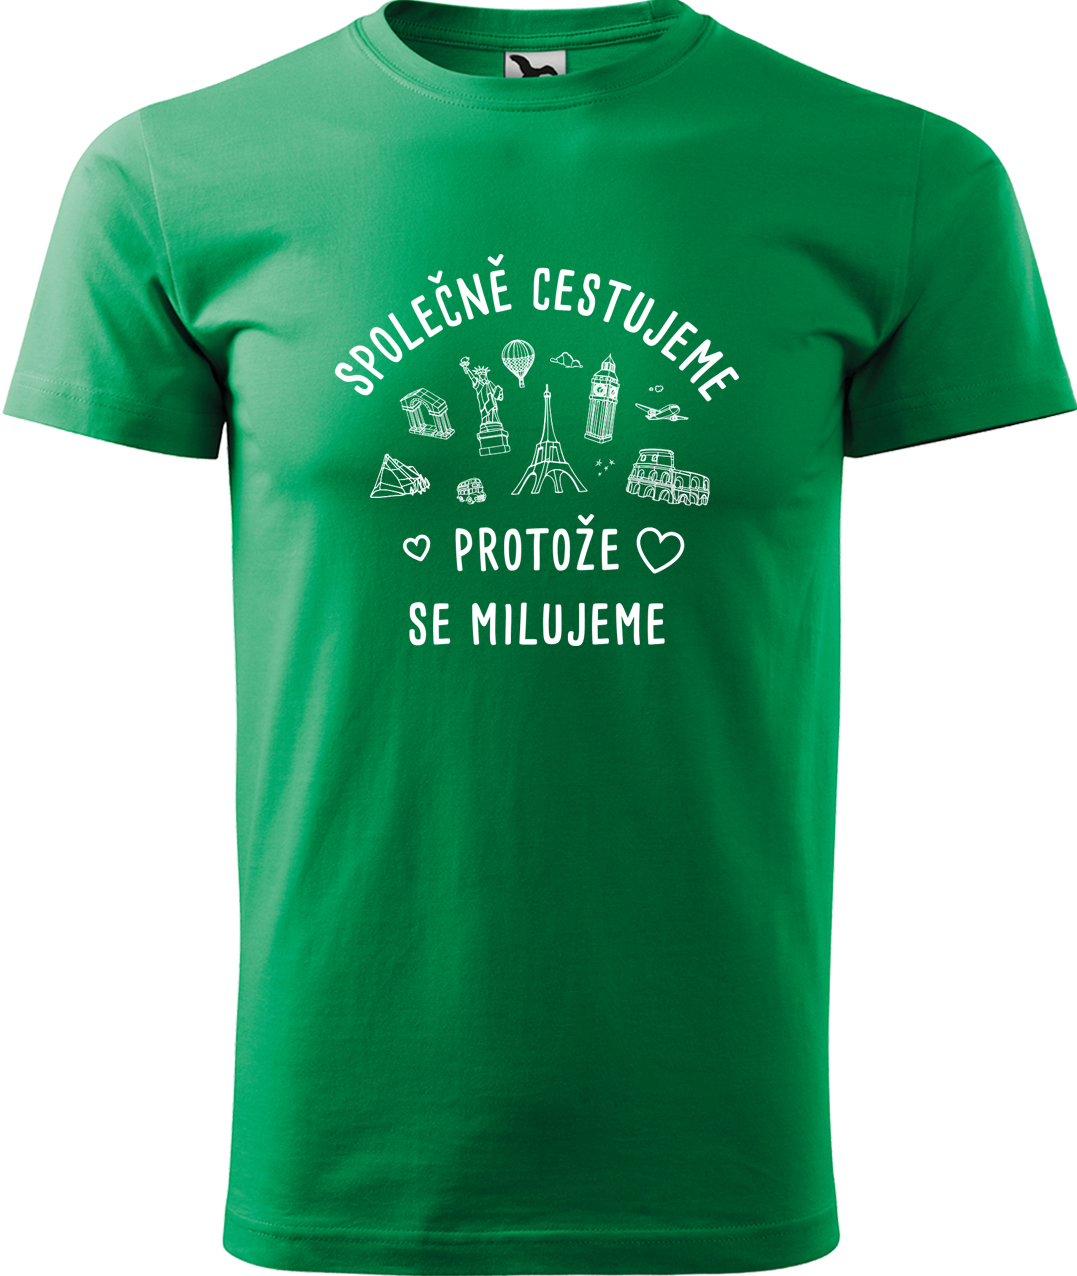 Pánské cestovatelské tričko - Společně cestujeme protože se milujeme Velikost: L, Barva: Středně zelená (16), Střih: pánský